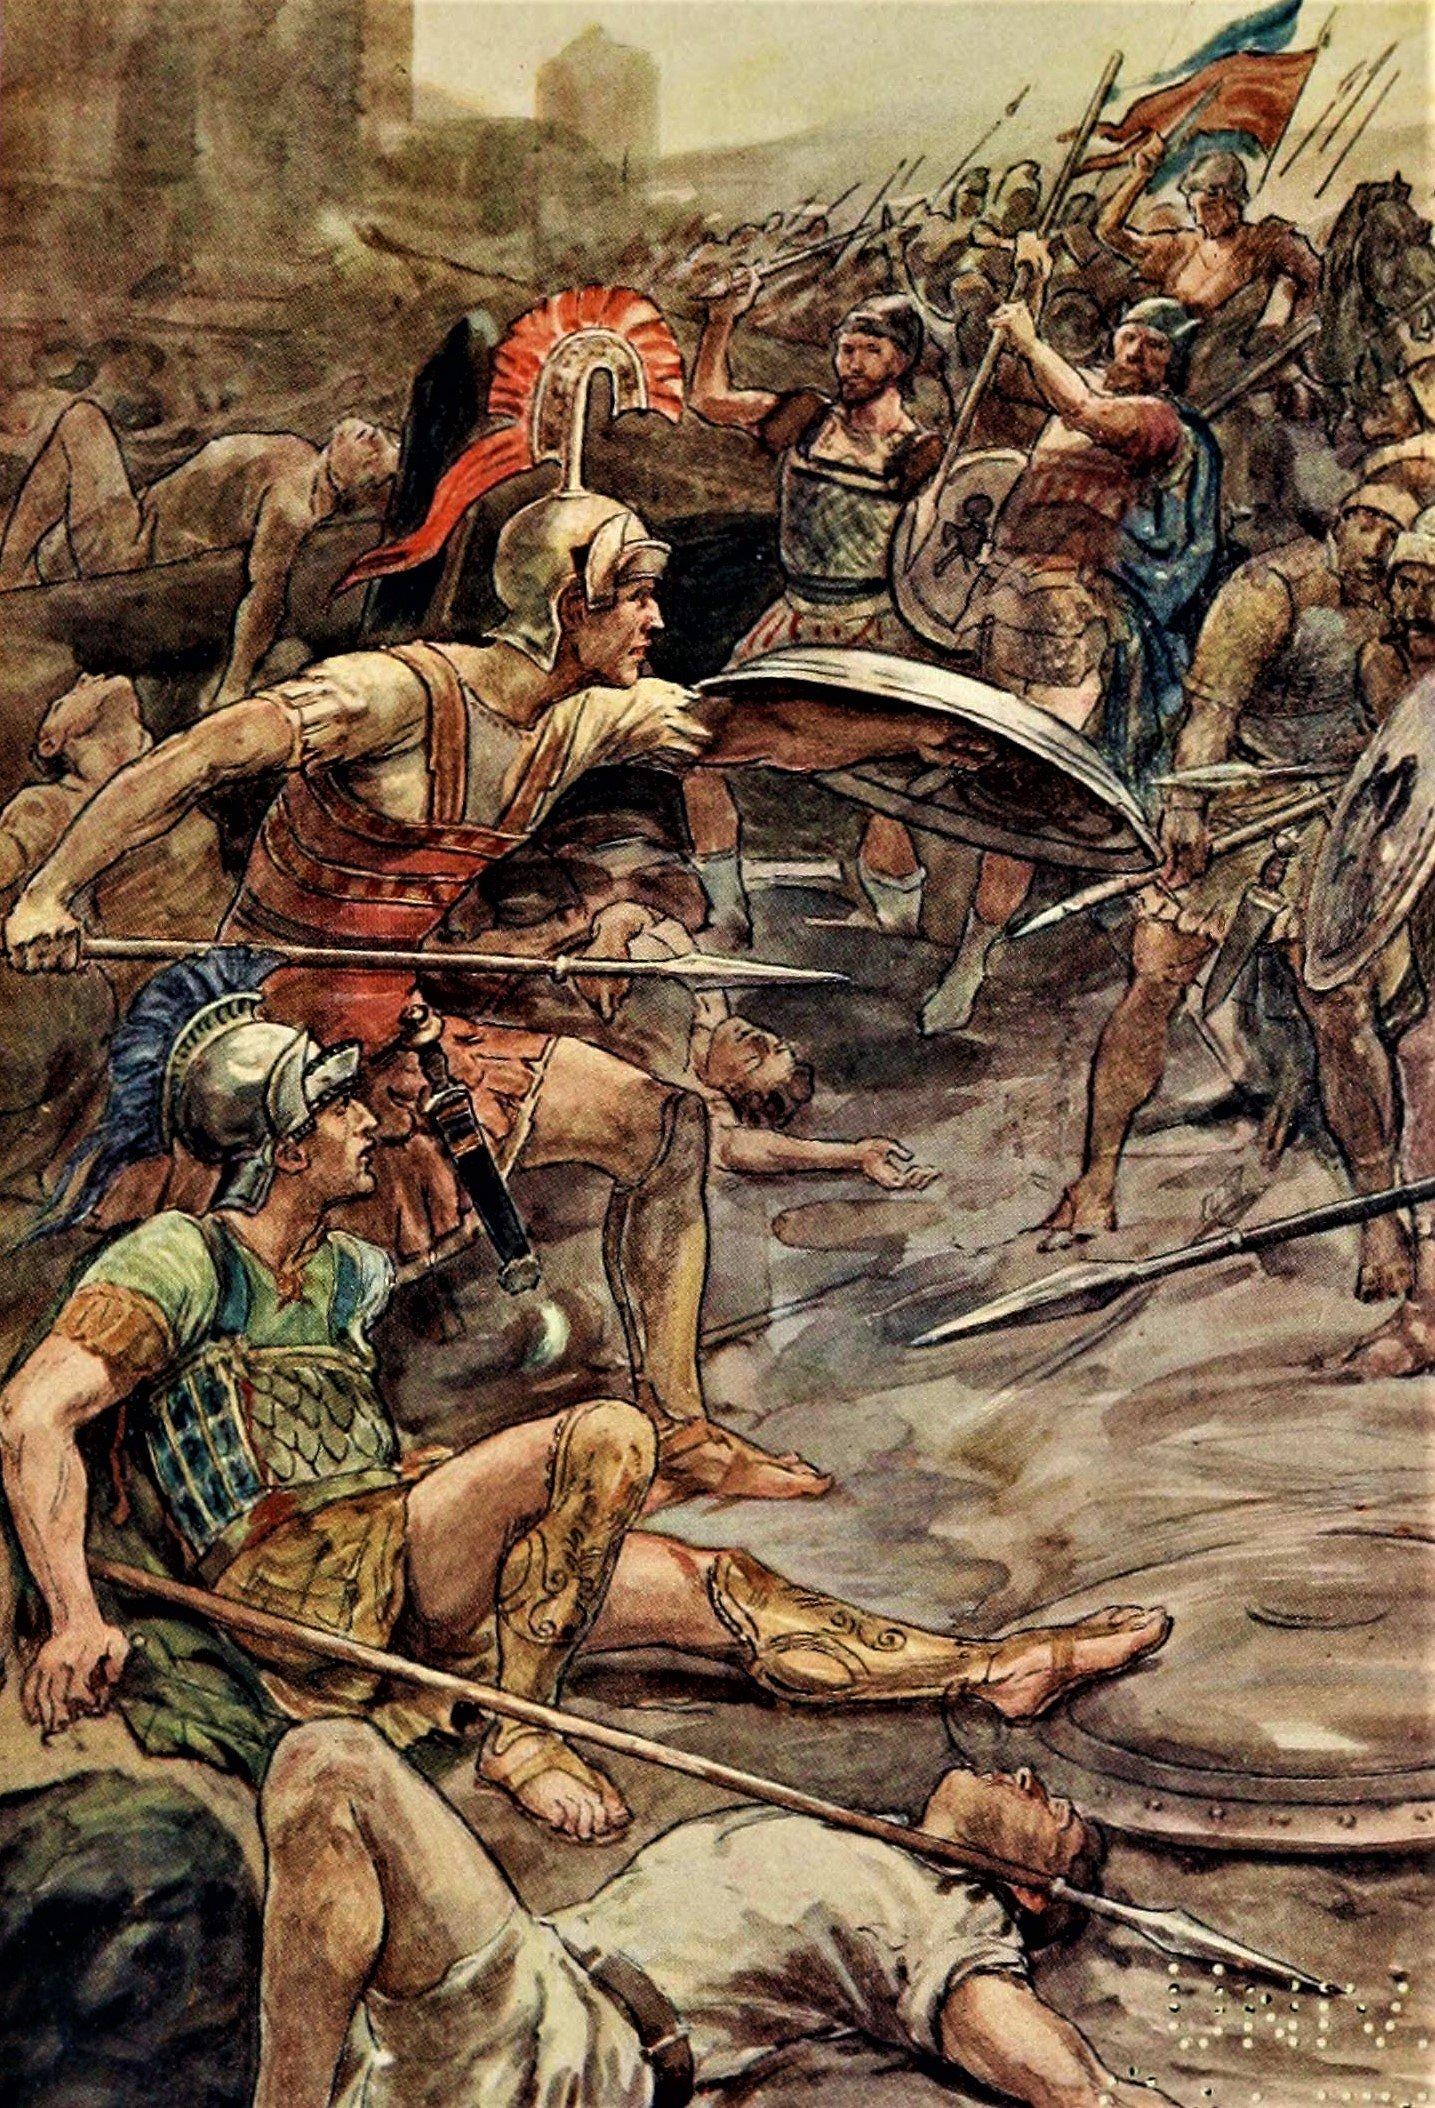 Wojownicy starożytnej Grecji pod czas bitwy o Pelopidas przedstawieni na kolorowym rysunku z 1900 roku